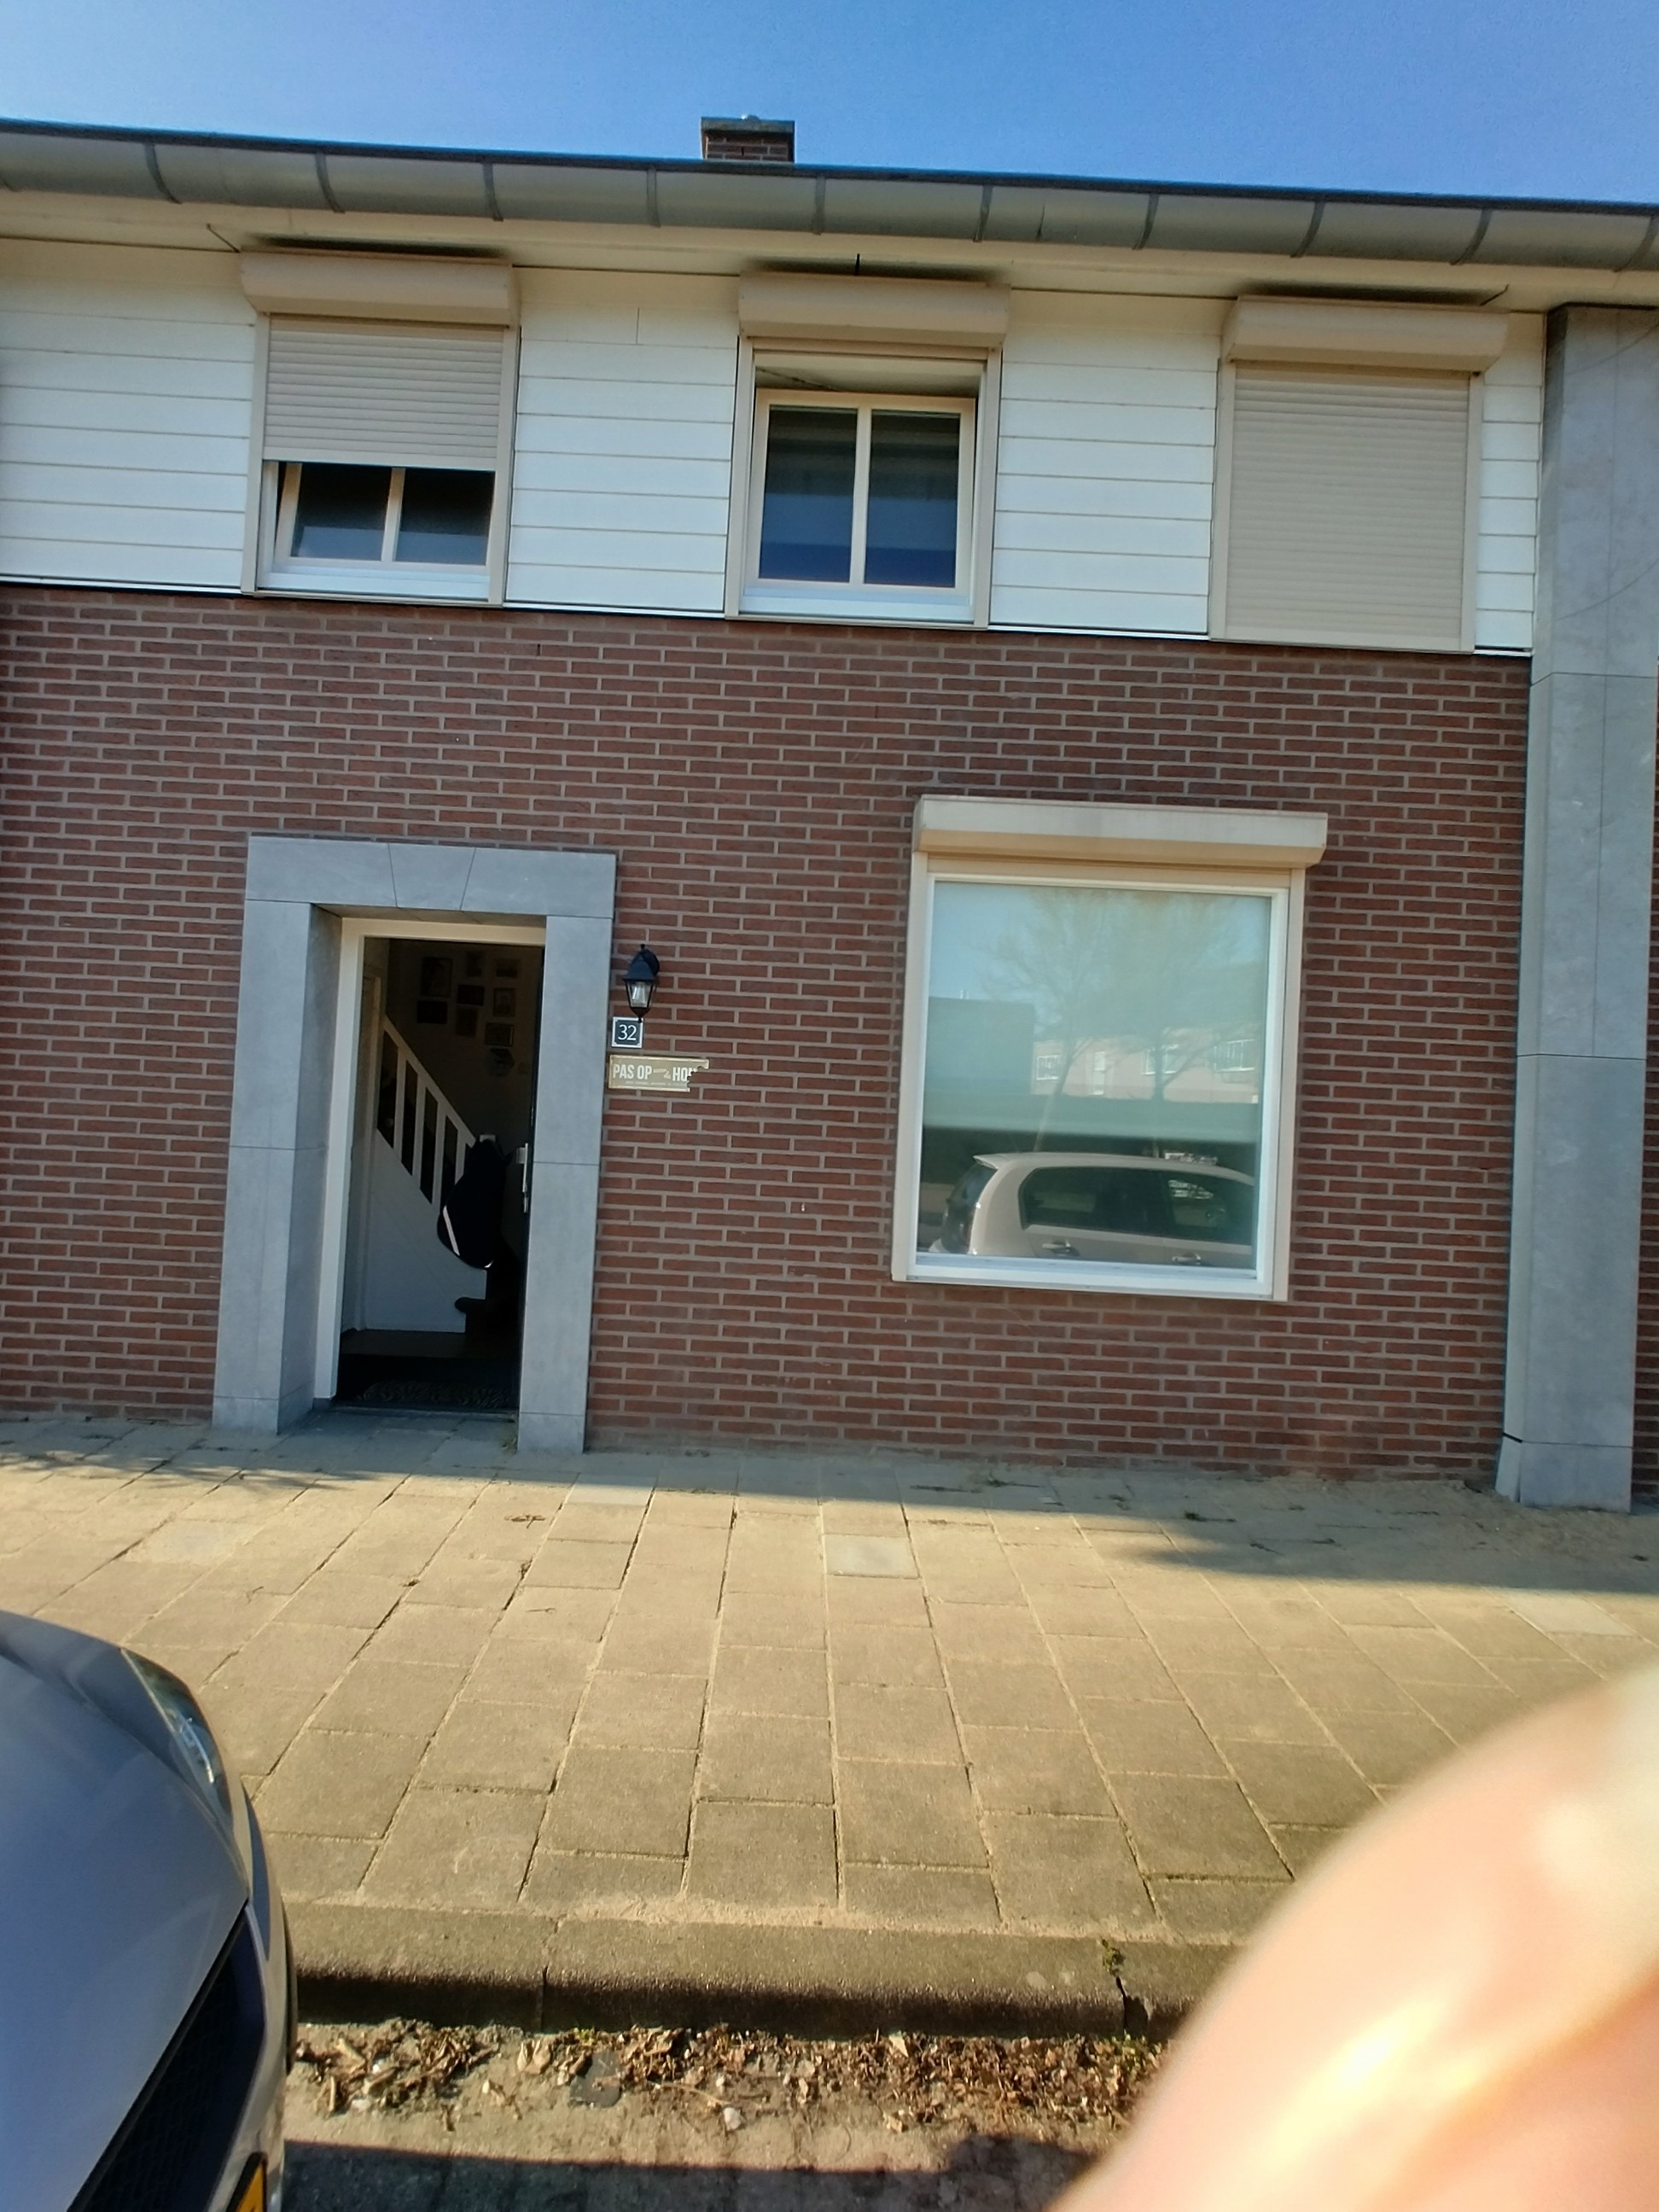 Rubensstraat 32, 4941 ZE Raamsdonksveer, Nederland